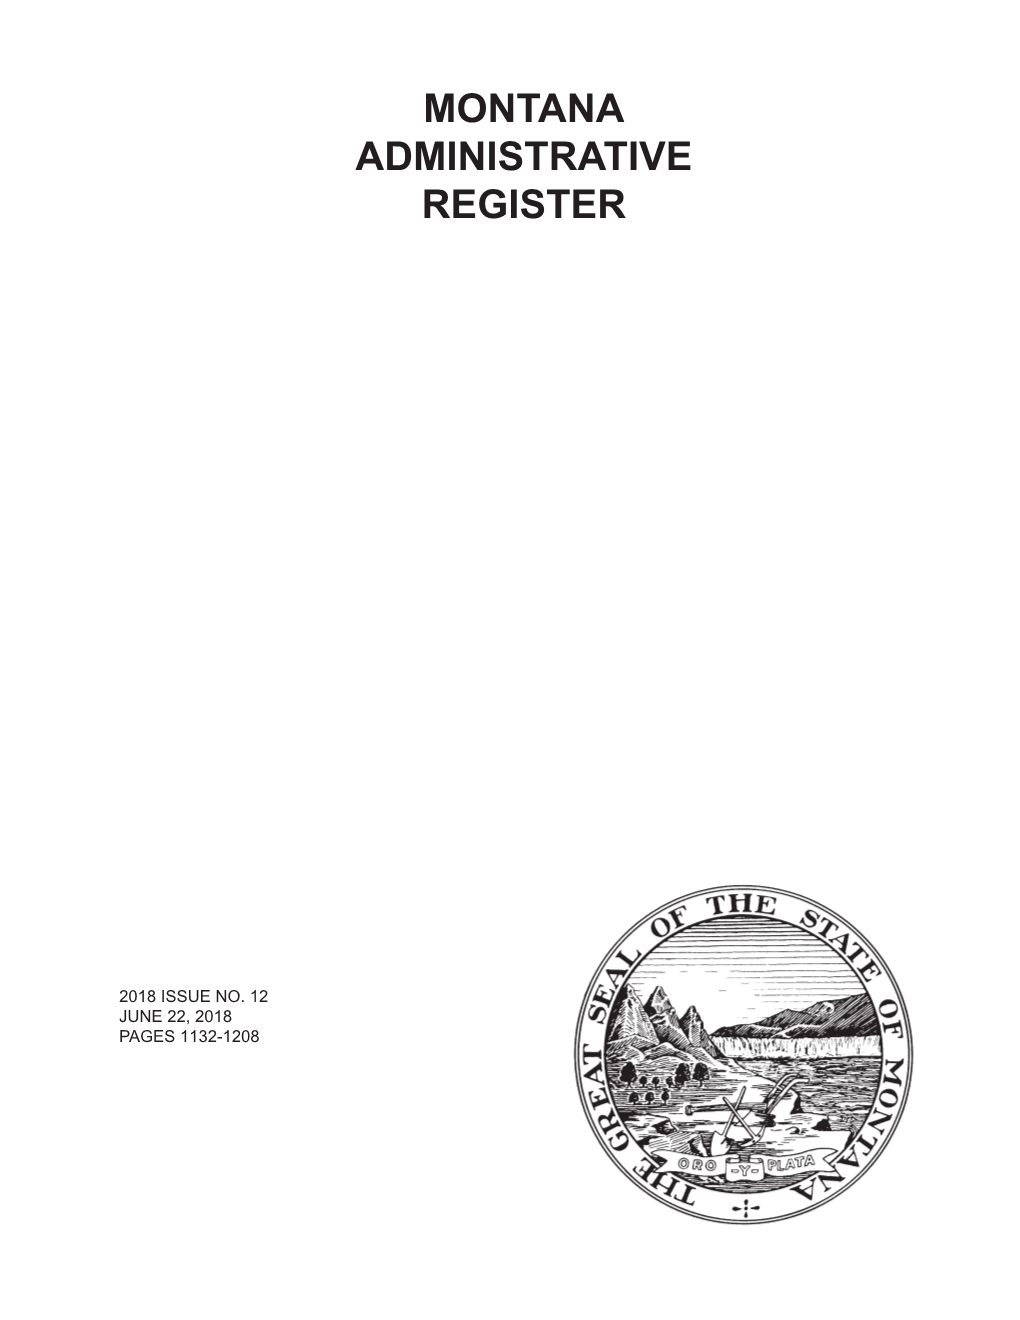 Montana Administrative Register